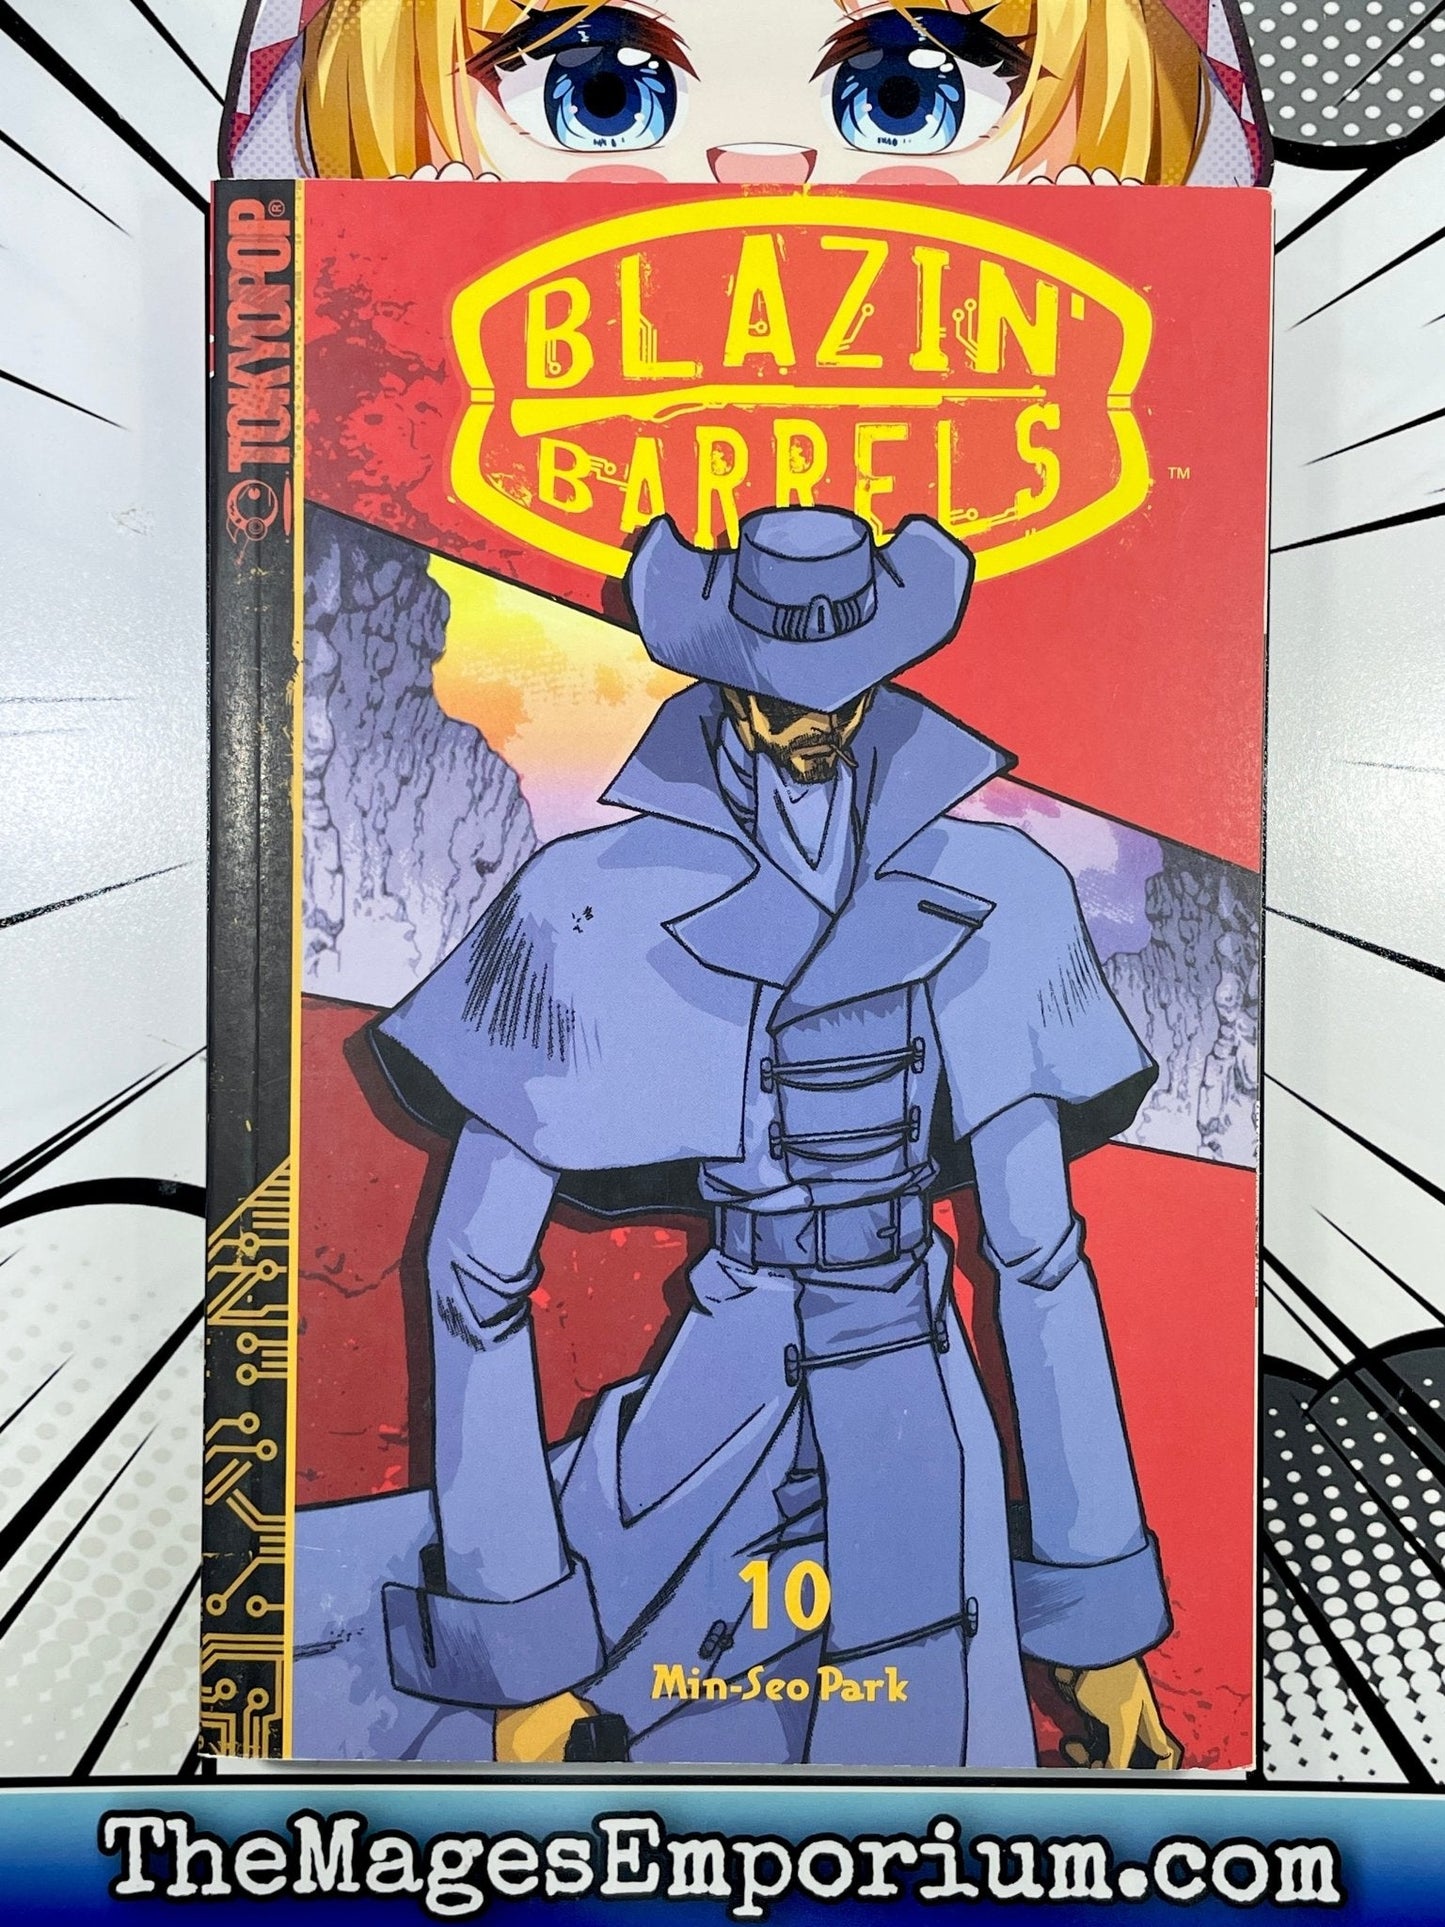 Blazin' Barrels Vol 10